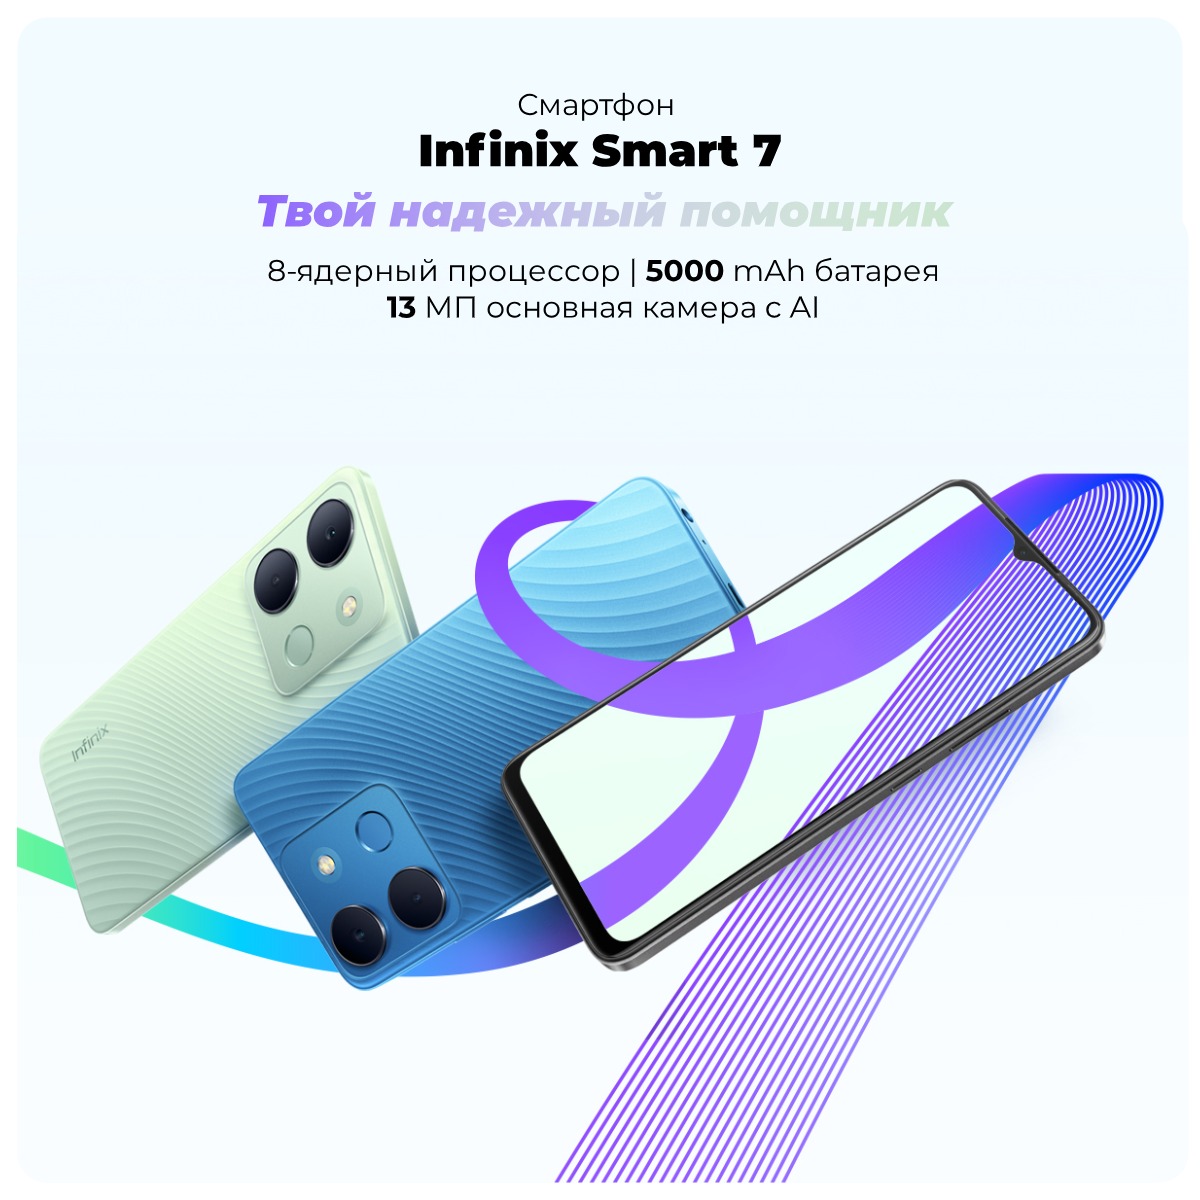 Infinix-Smart-7-01